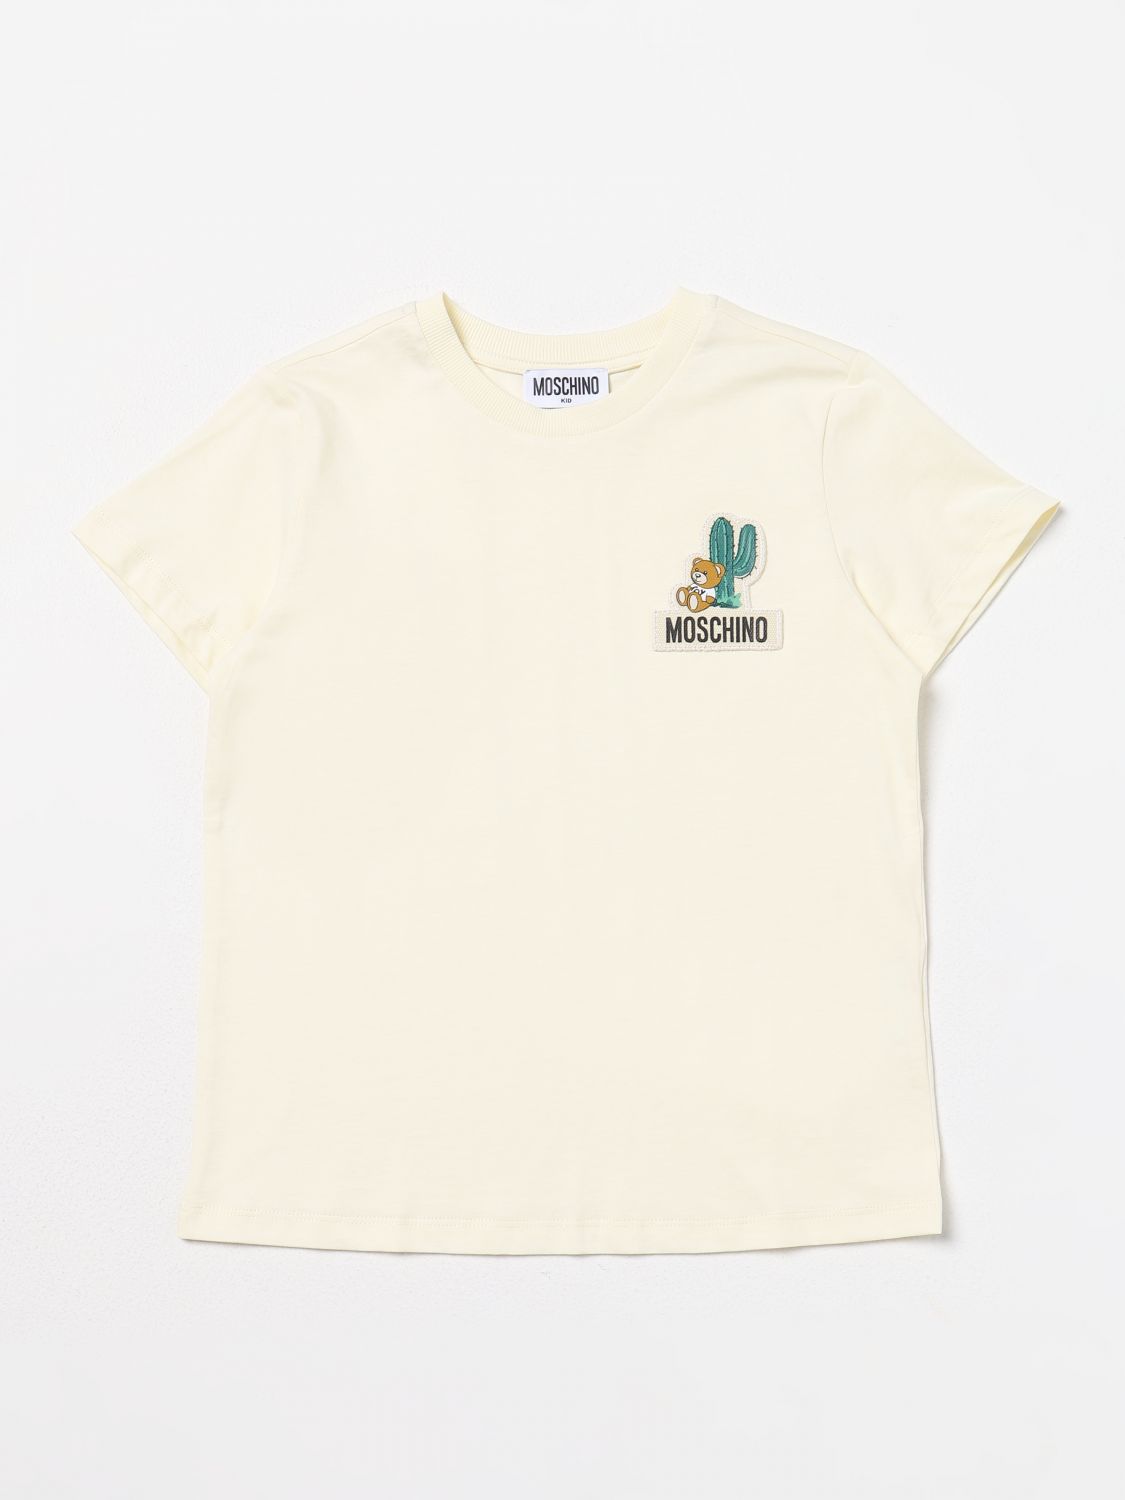 Moschino Kid T-shirt  Kids Color Yellow Cream